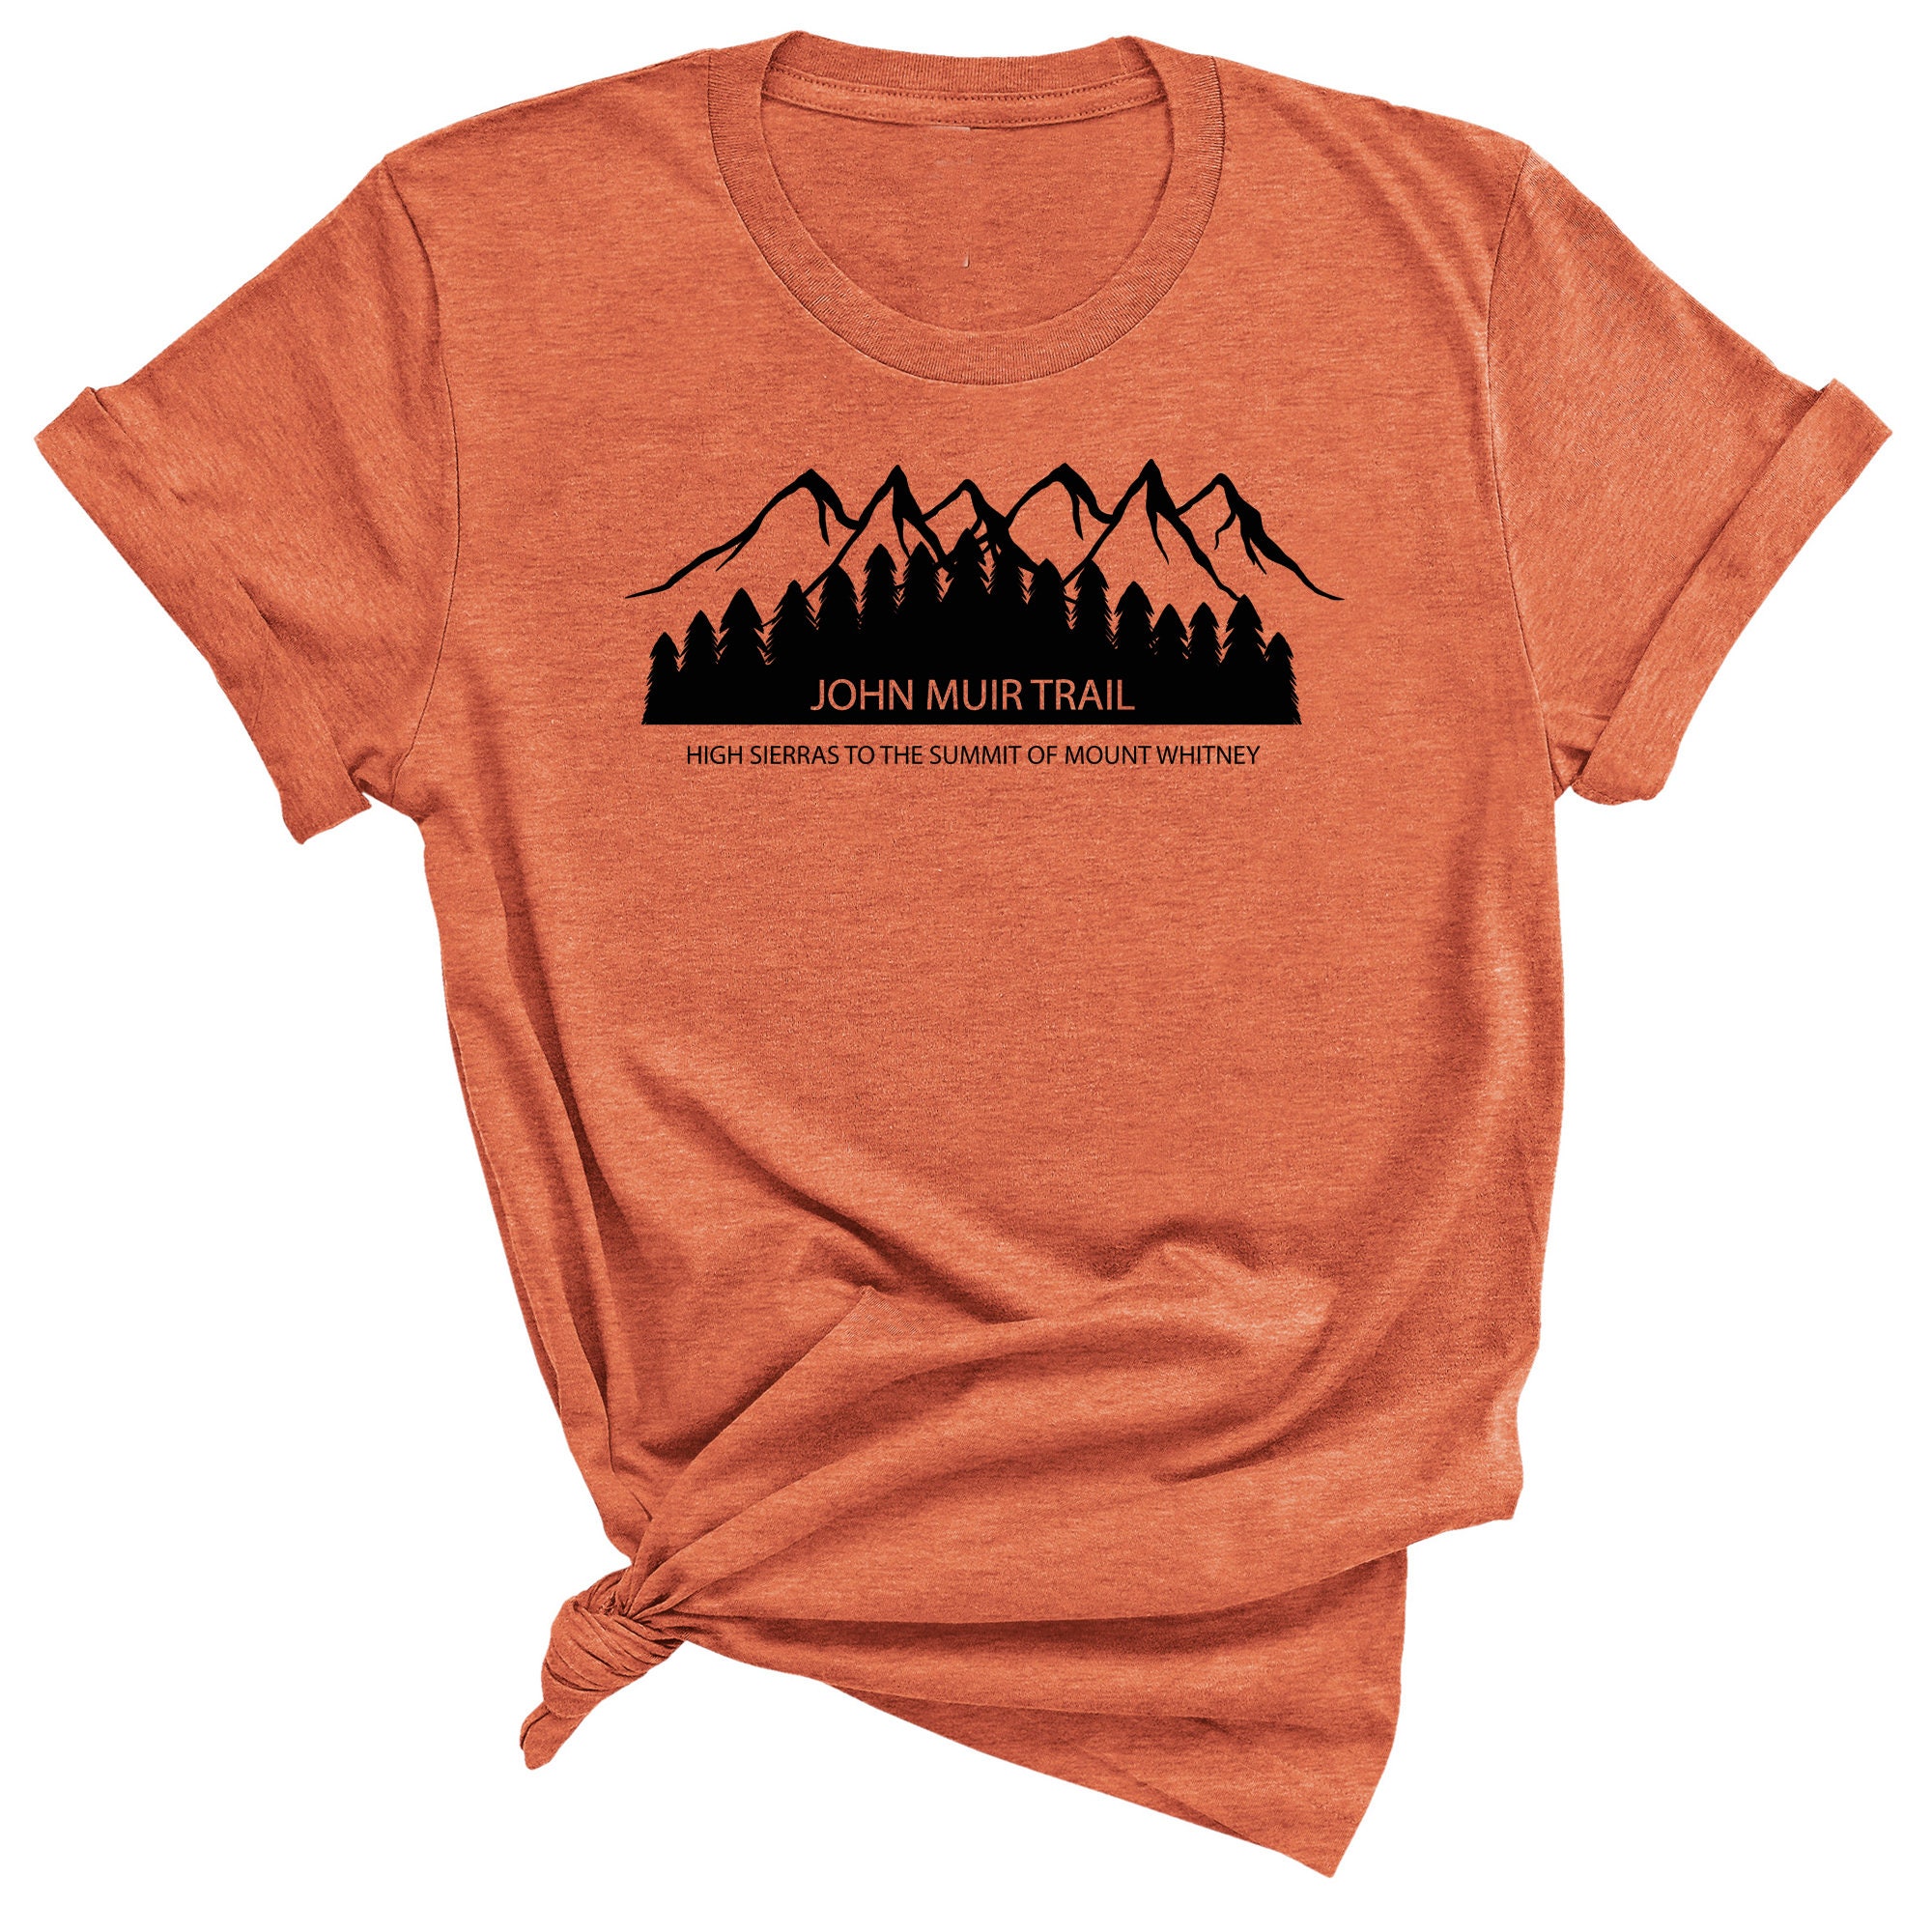 John Muir Trail Shirt Yosemite hiking shirt john muir | Etsy